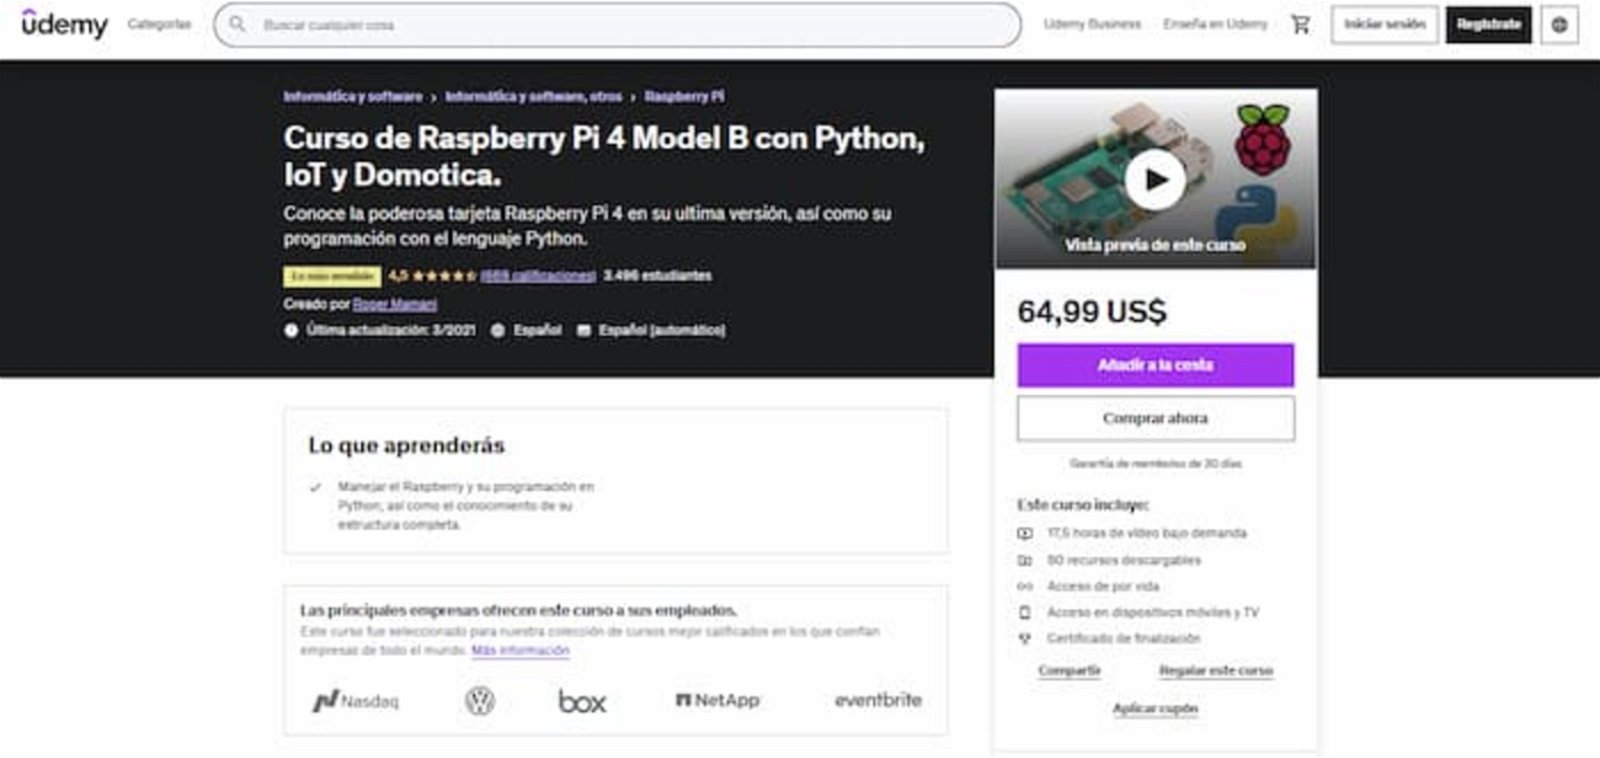 Con este curso podrás aprender a utilizar tu Rasperry Pi, así como también a programar en Python desde cero y otros aspectos relacionados a la domótica y al IoT